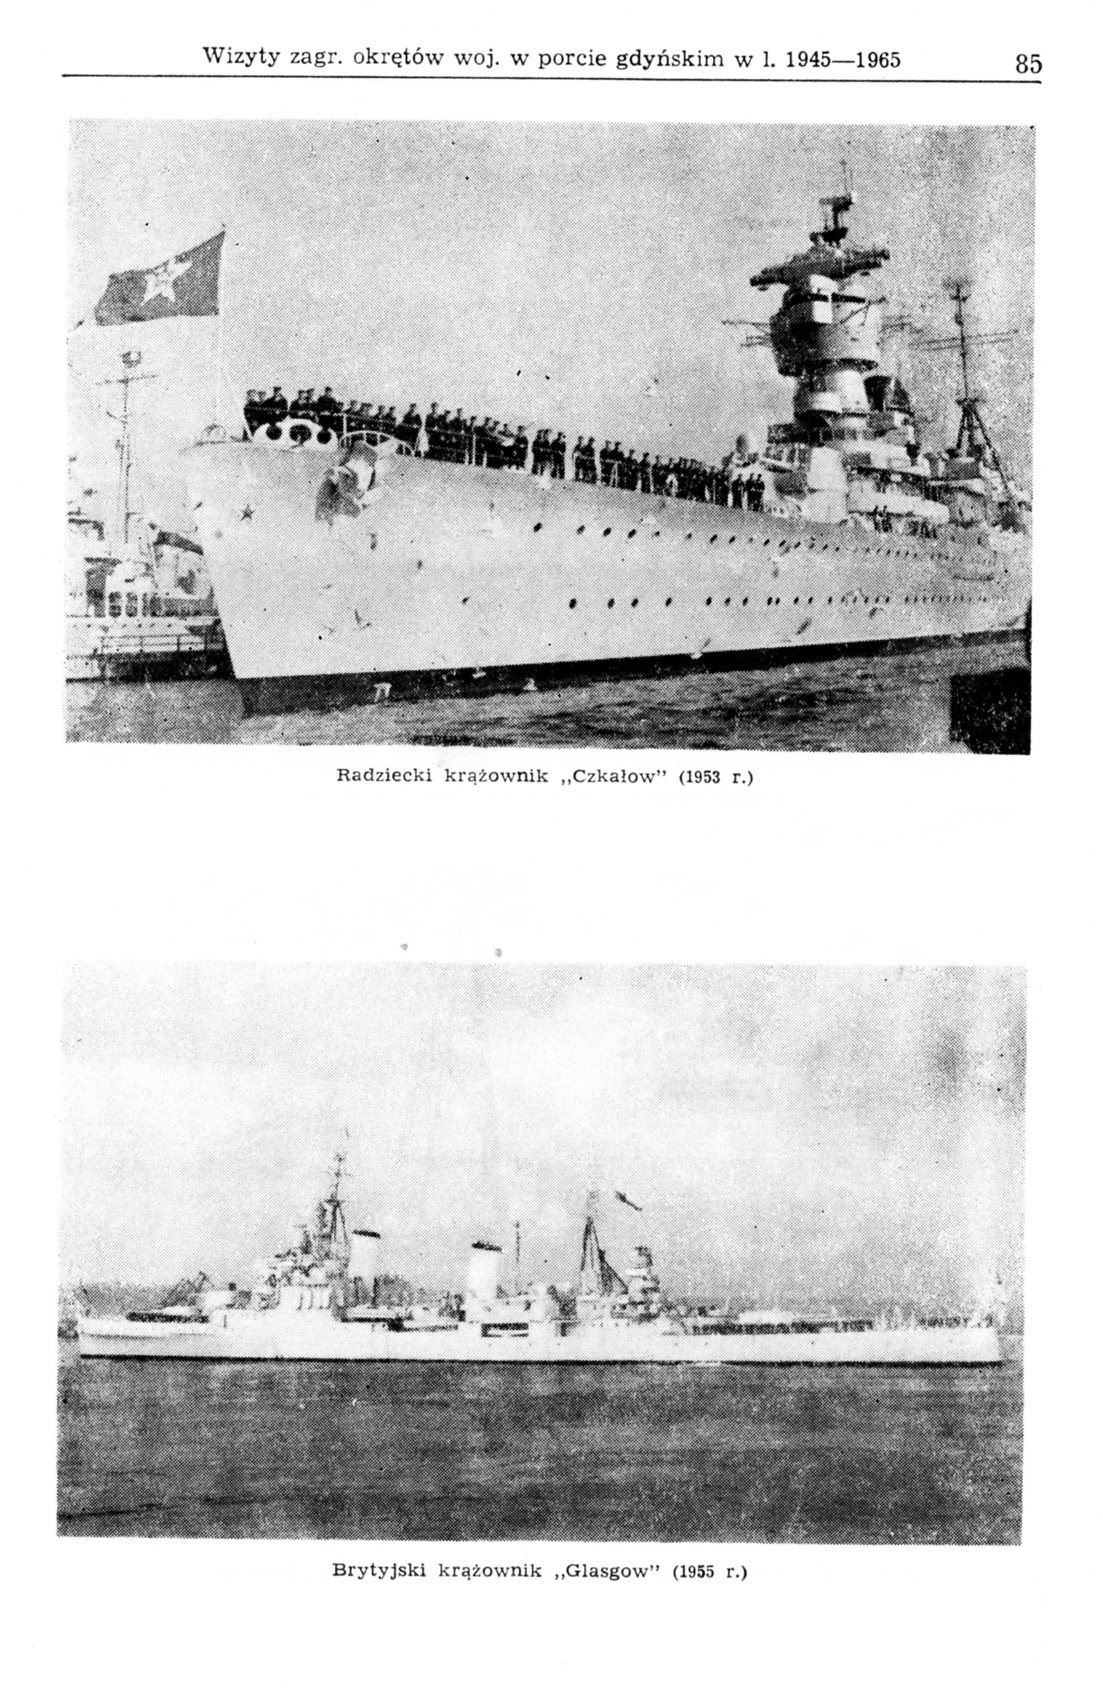 Wizyty zagranicznych okrętów wojennych w porcie gdyńskim w latach 1945-1965